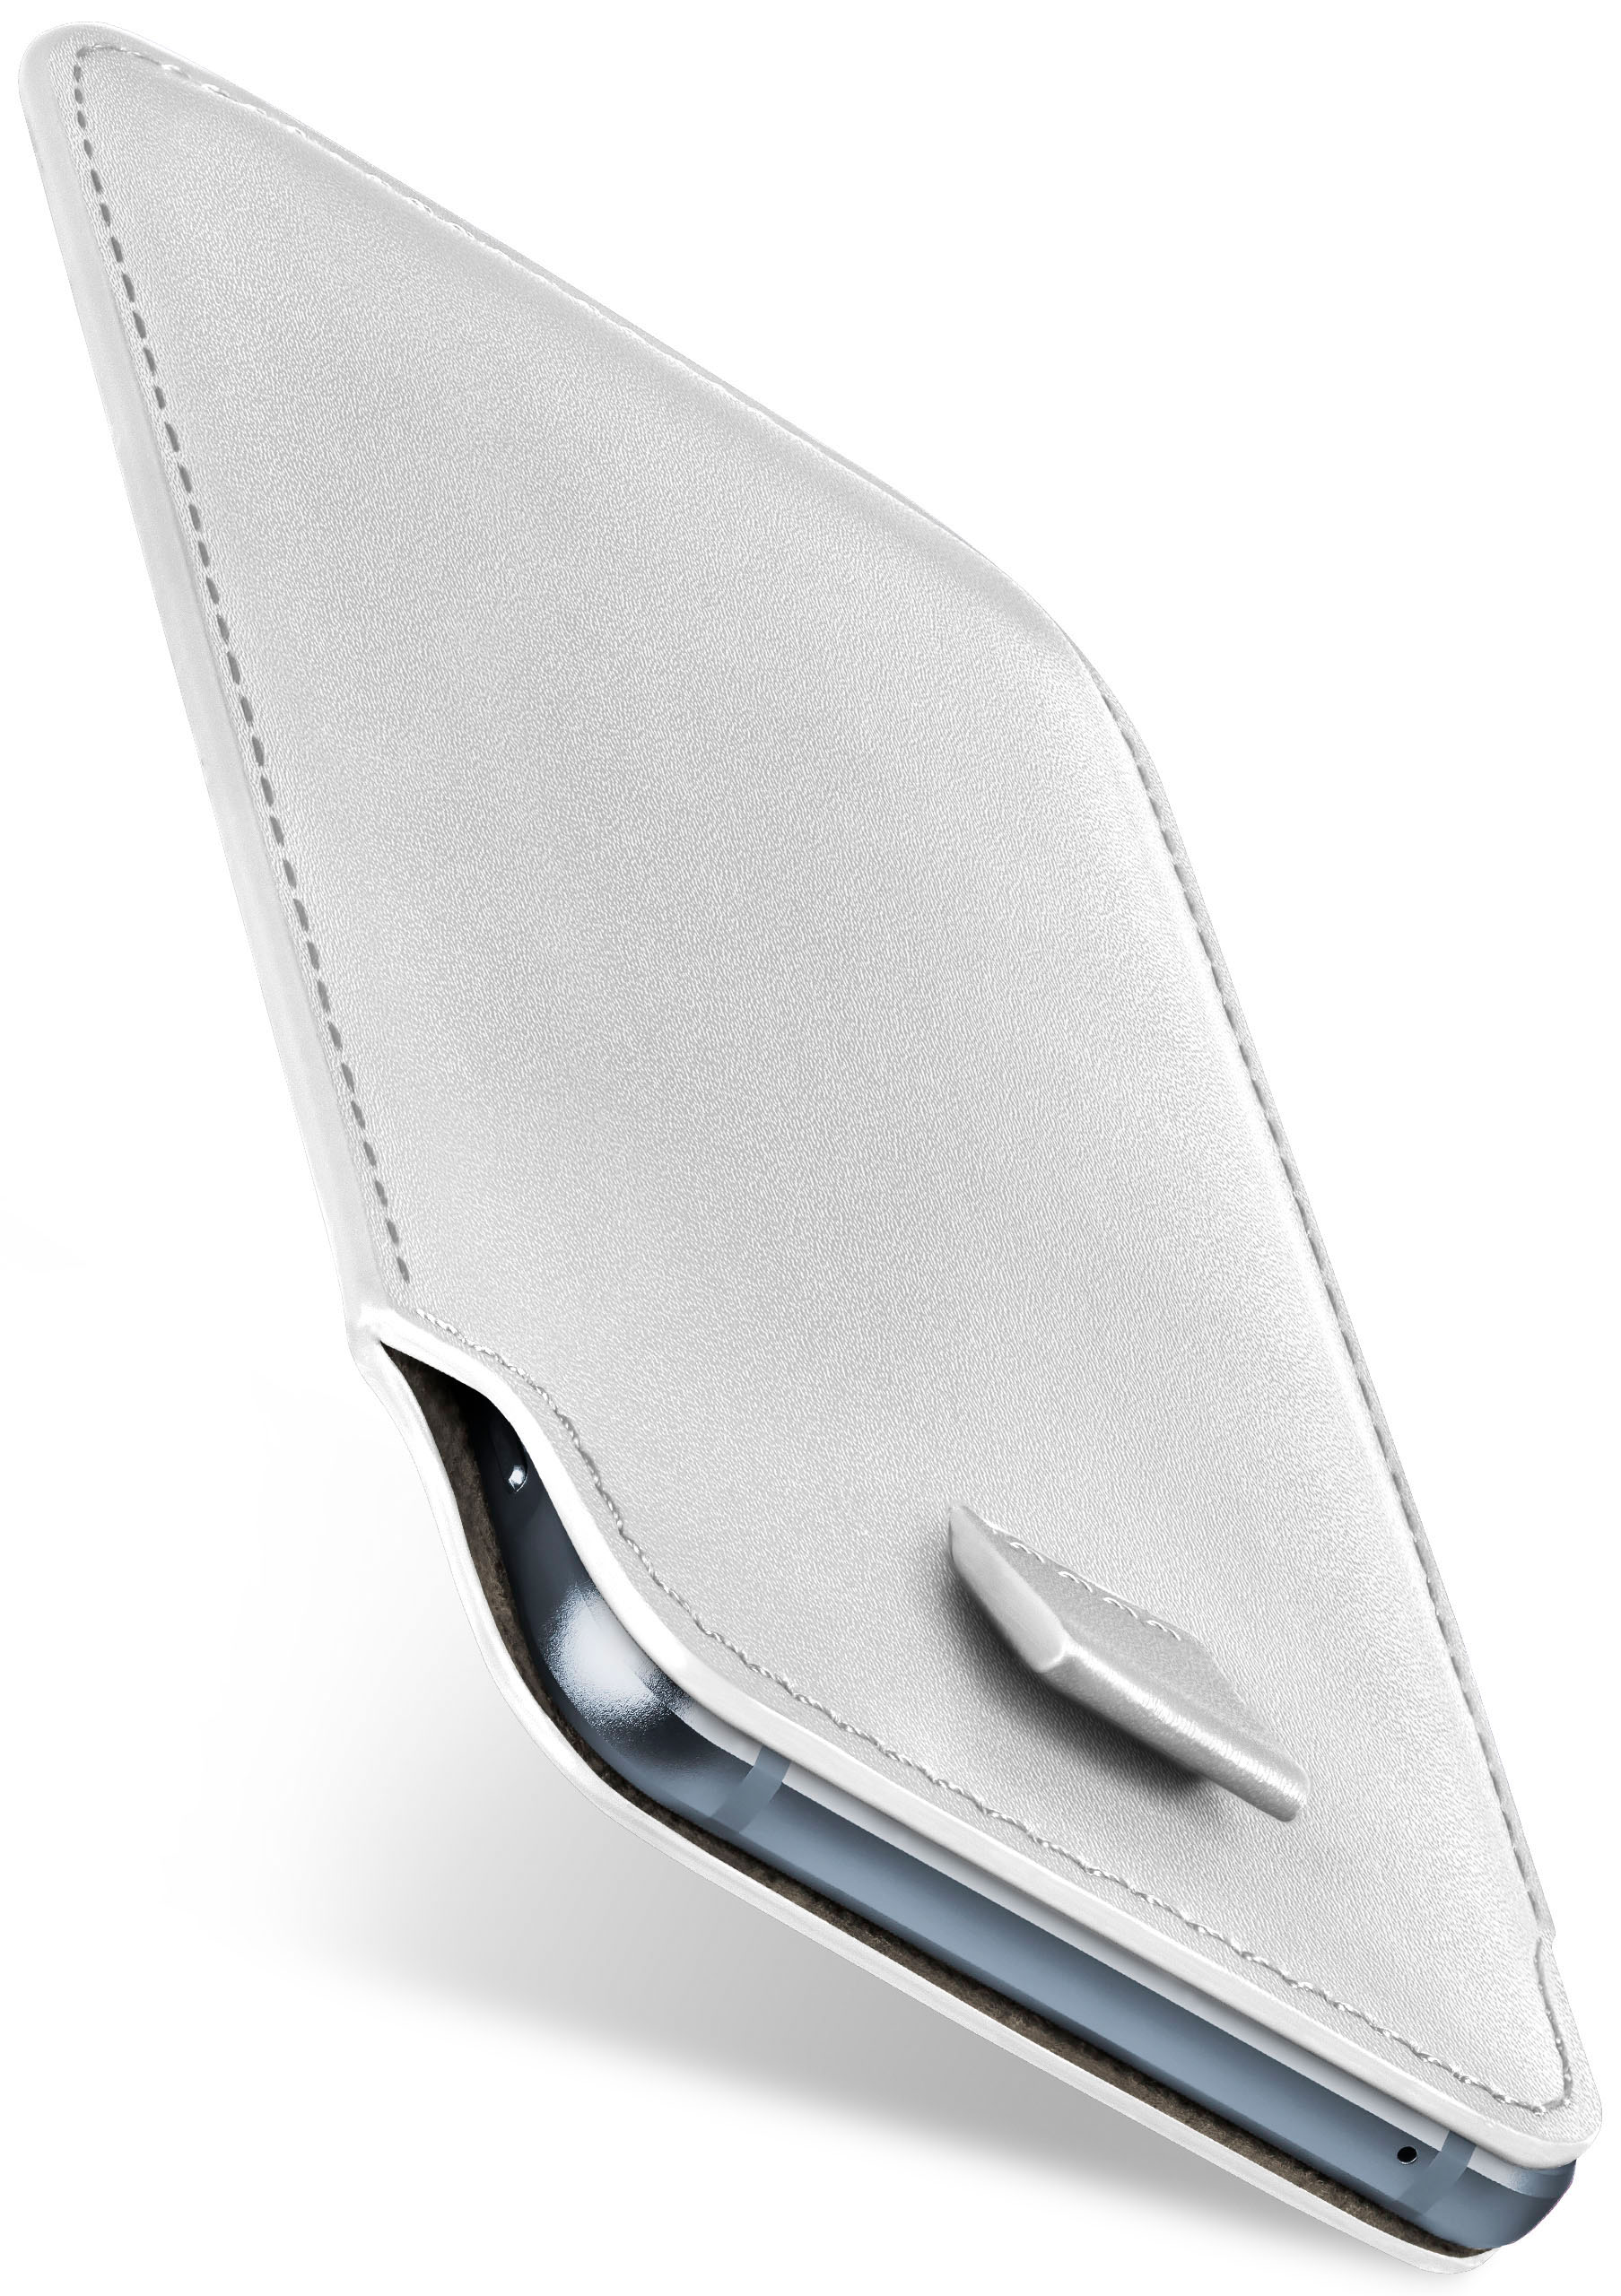 MOEX Slide Cover, Nokia, Shiny-White 6.1, Case, Full